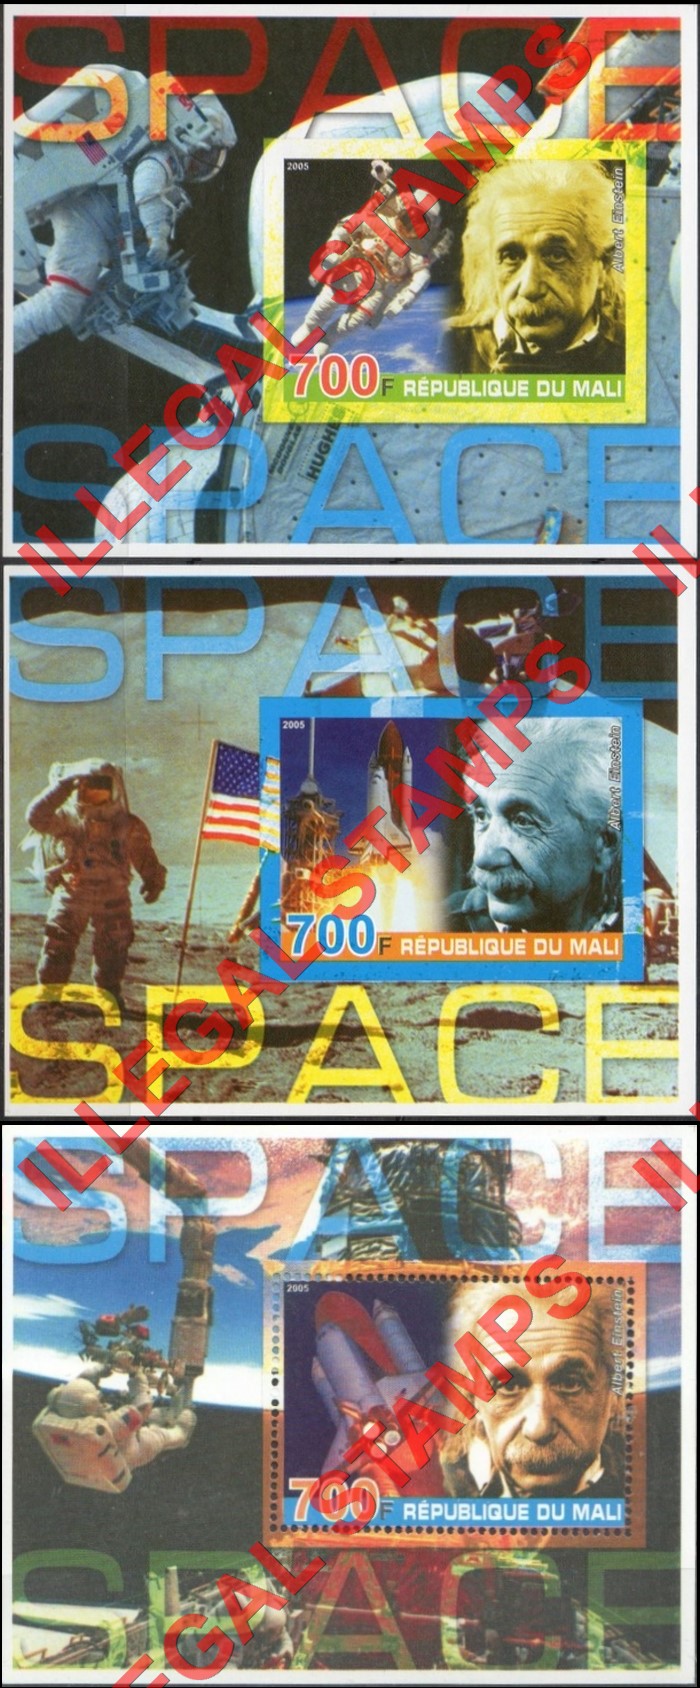 Mali 2005 Albert Einstein Space Illegal Stamp Souvenir Sheets of 1